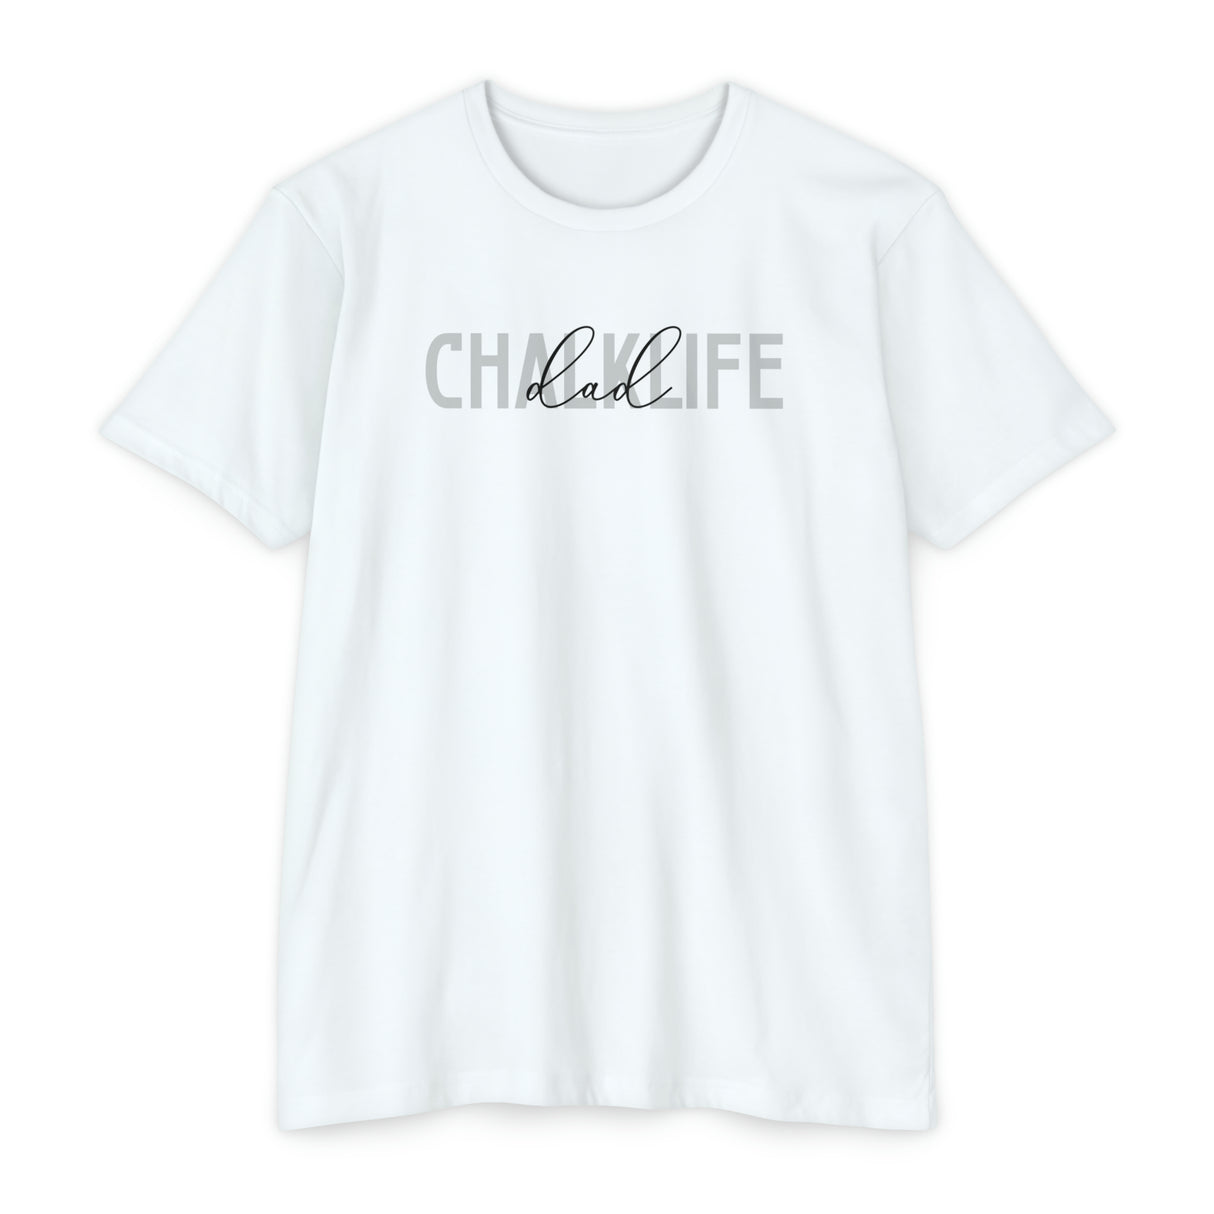 Chalklife - "Dad" T-shirt